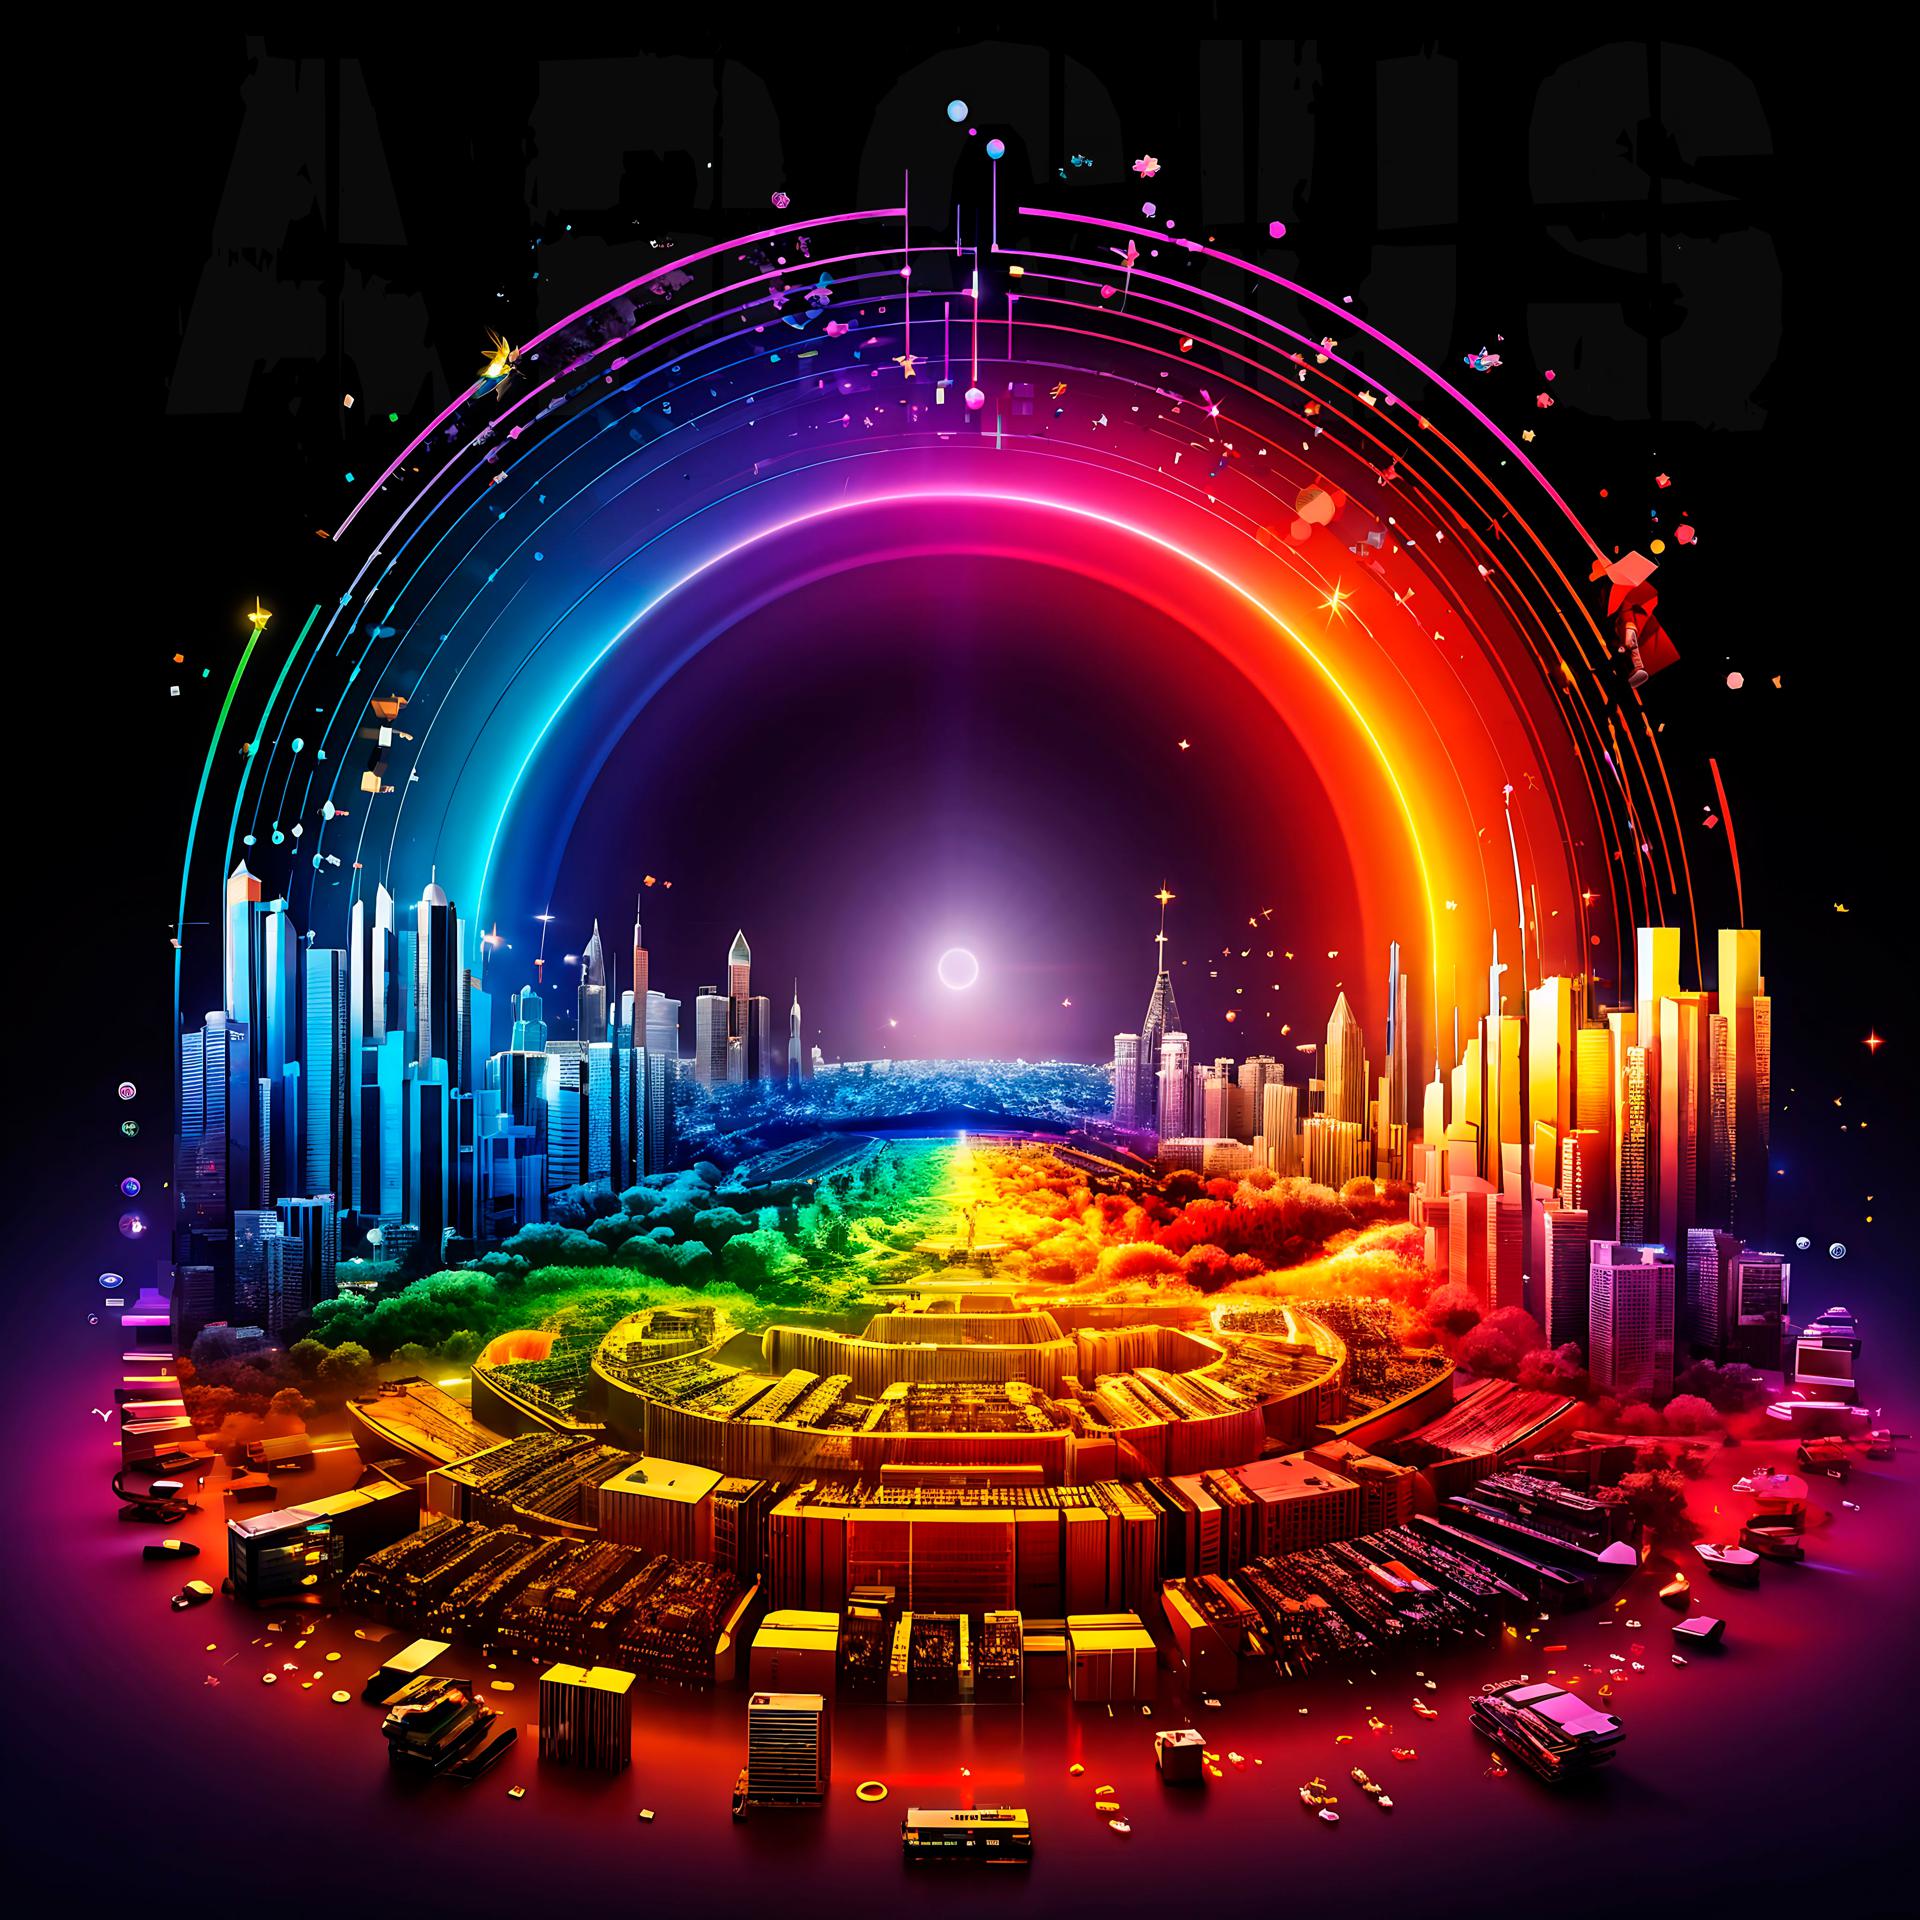 Постер альбома Arcus